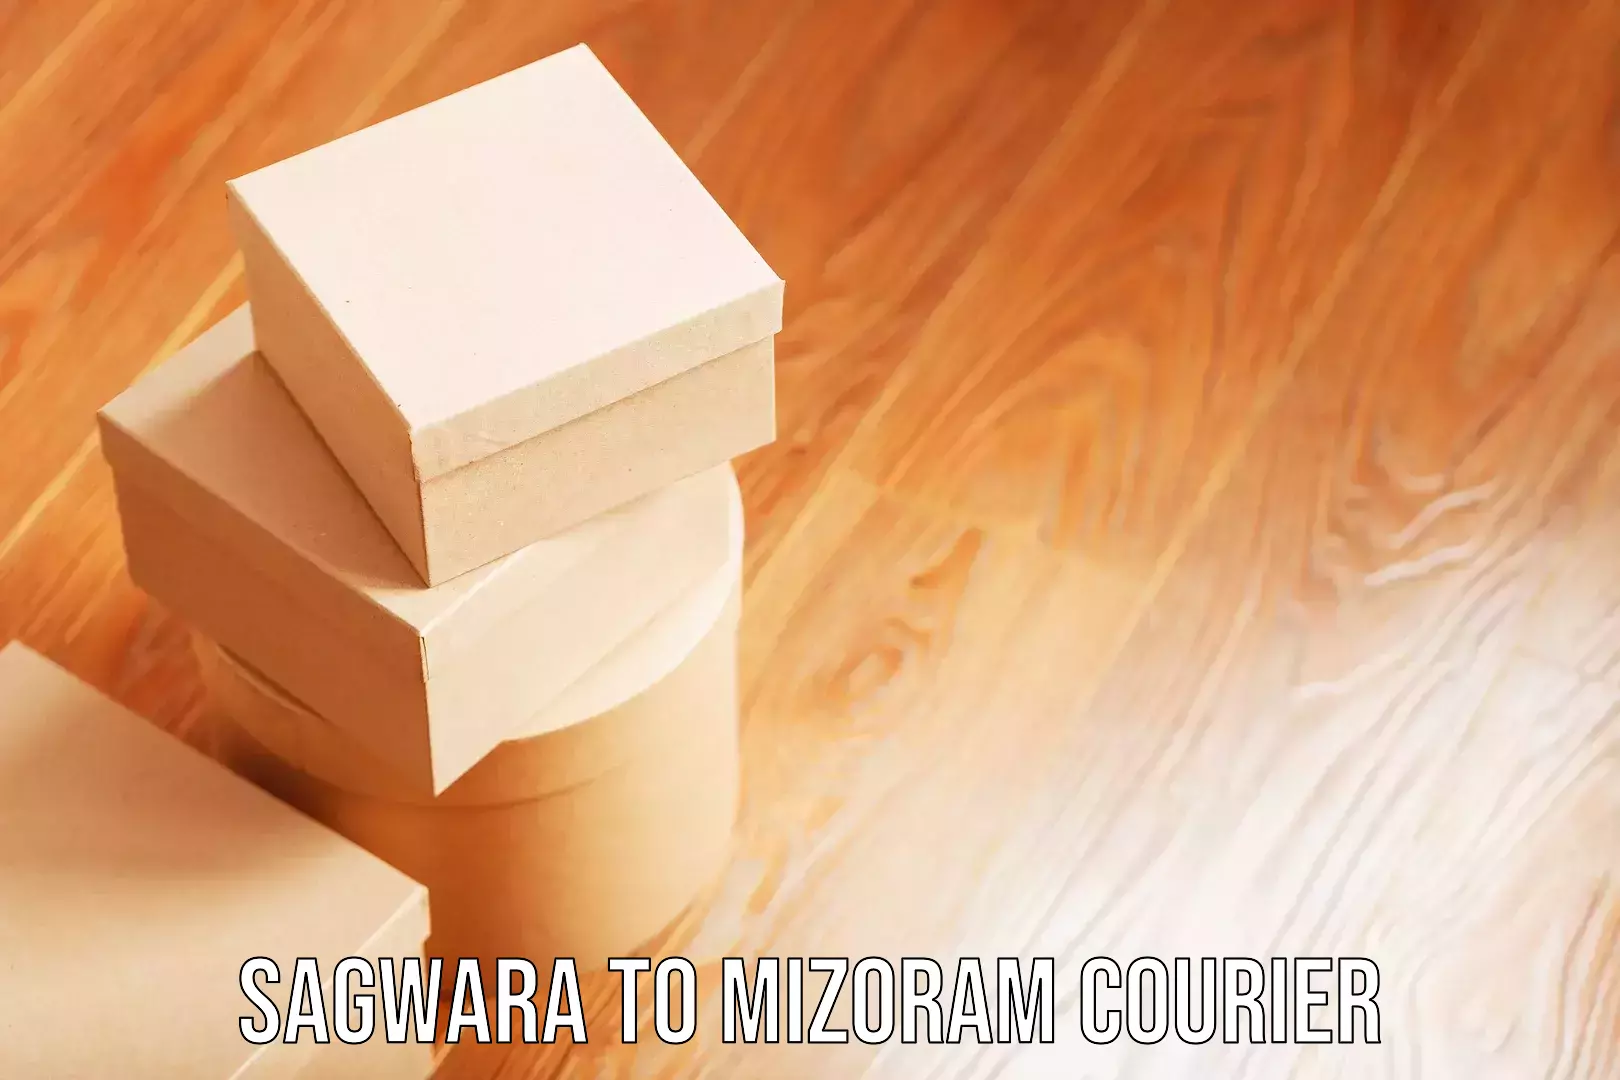 Luggage shipment specialists Sagwara to Mizoram